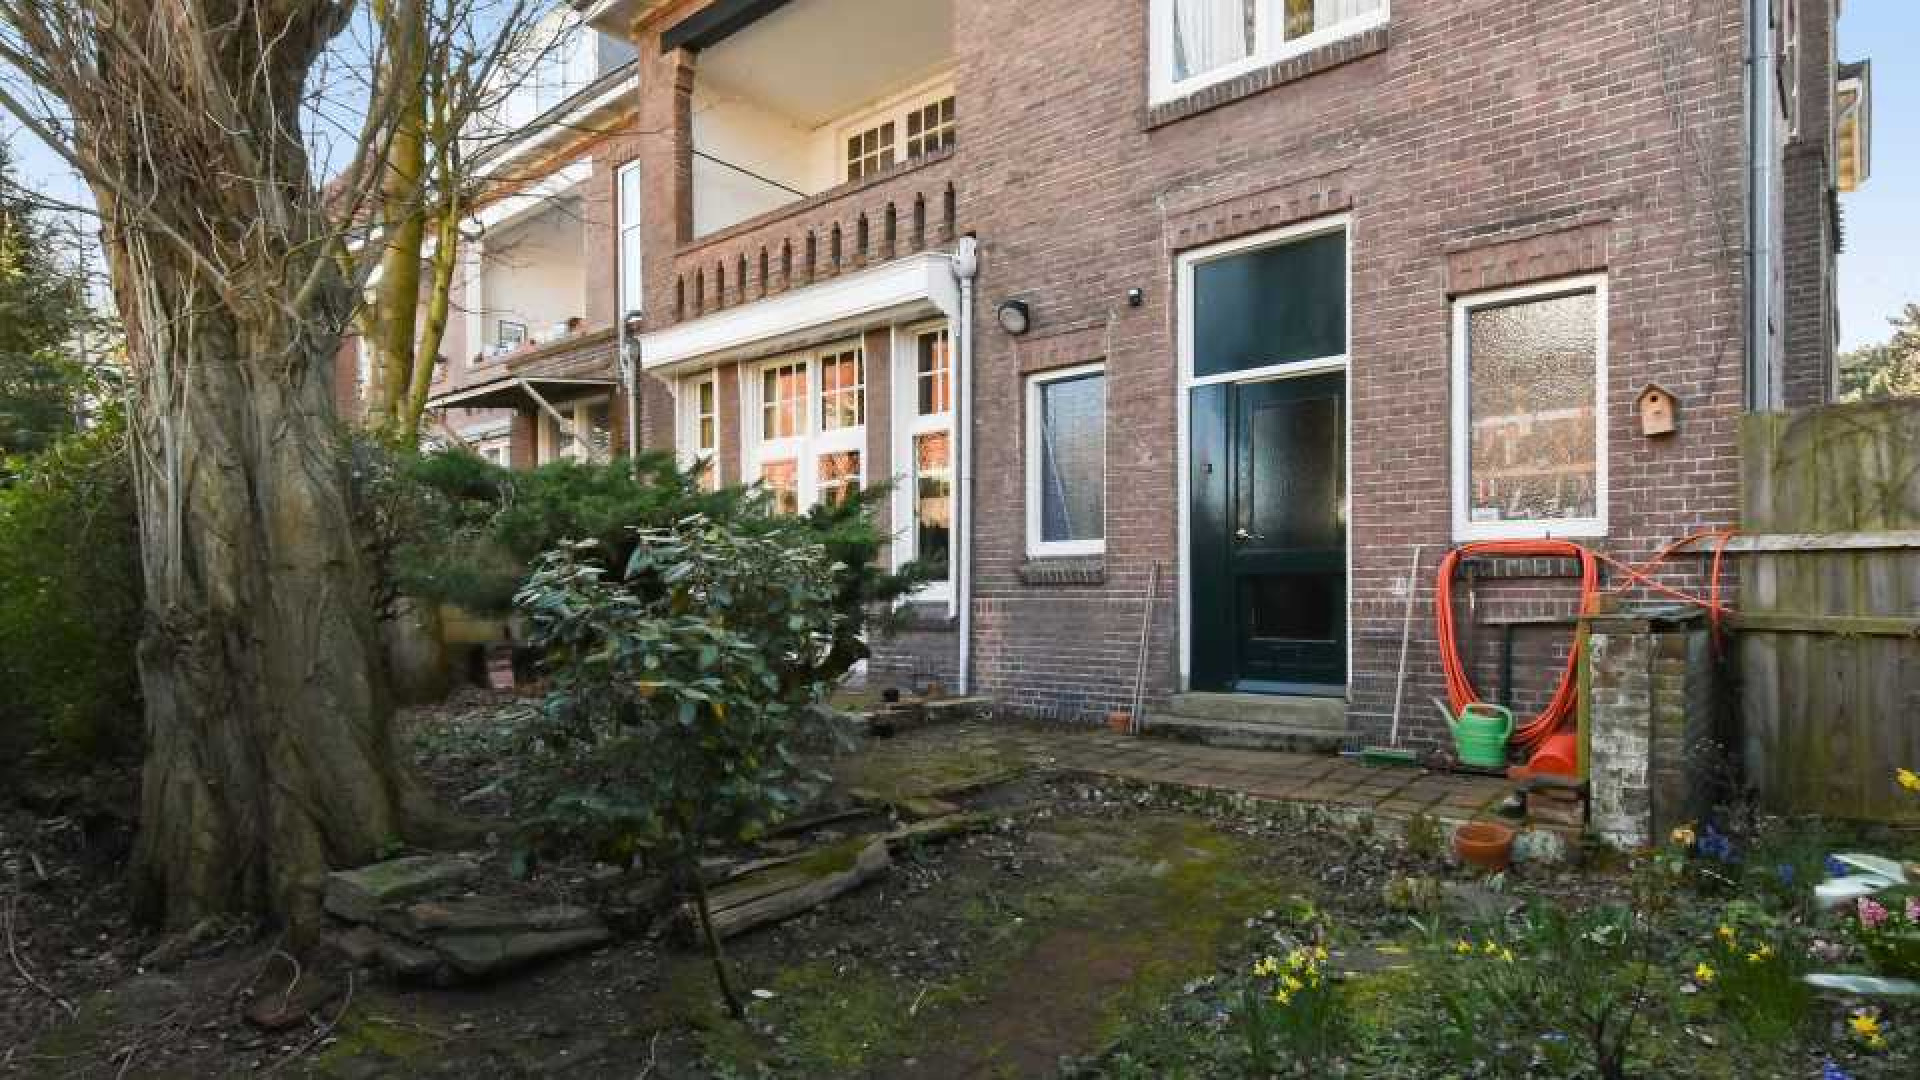 Presentatrice Leonie Ter Braak koopt miljoenenpand in chique Haagse buurt. Zie foto's